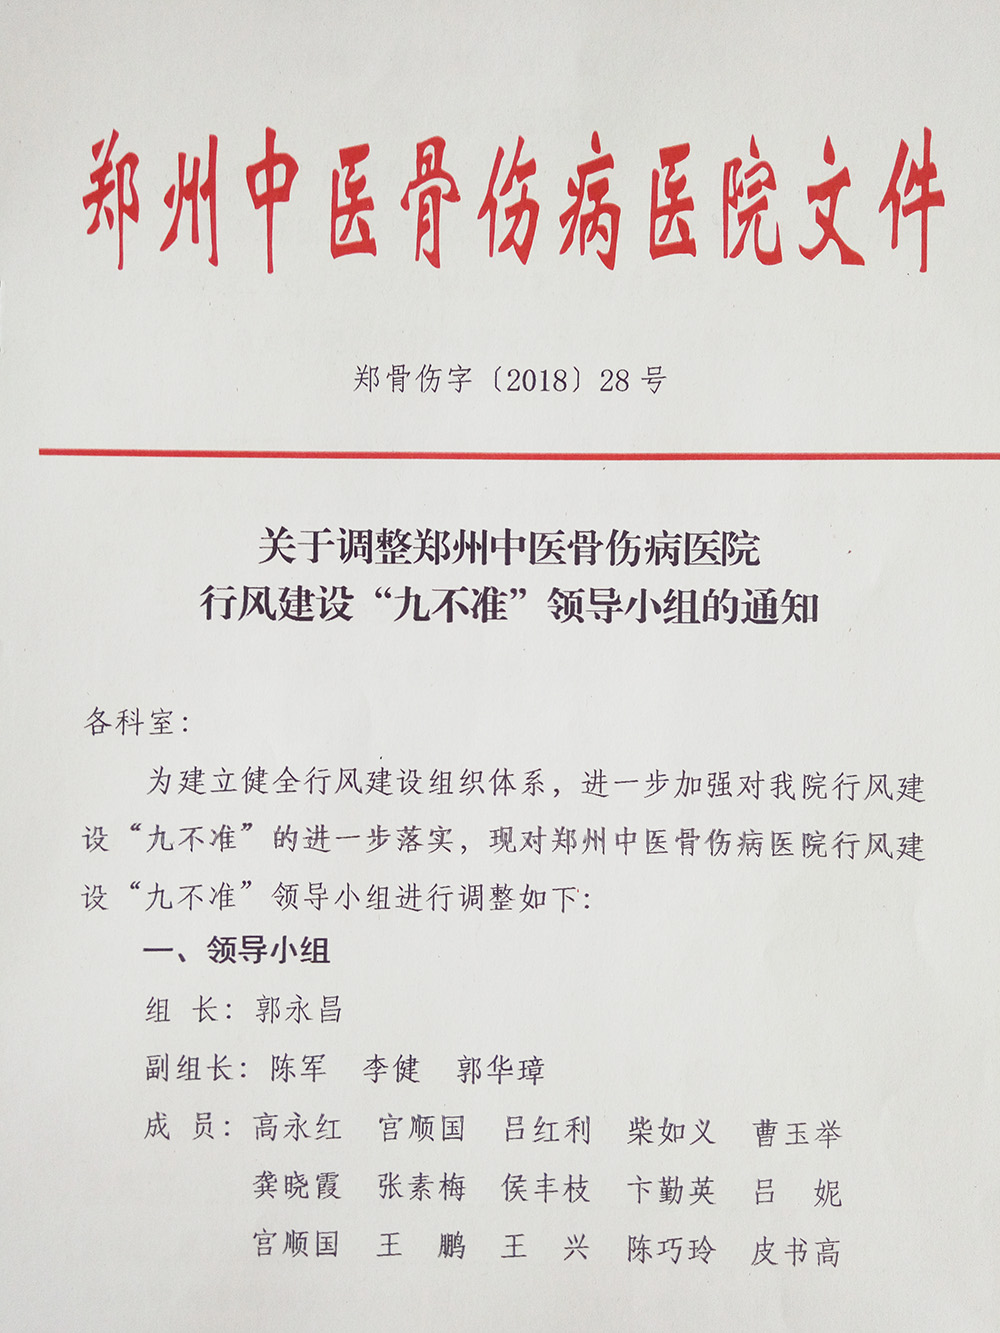 关于调整郑州中医骨伤病医院行风建设“九不准”领导小组的通知